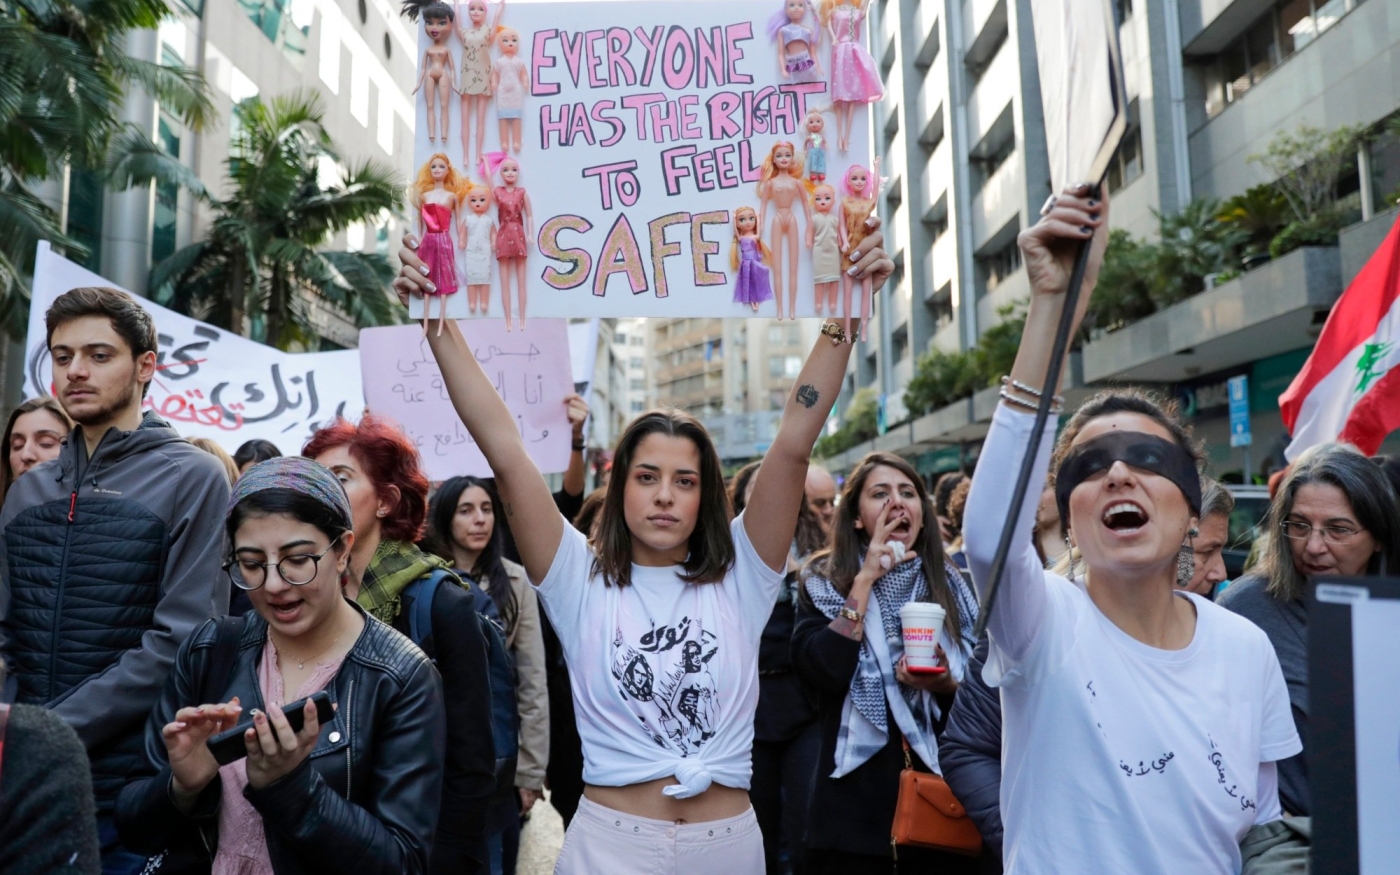 Les activistes participent à une manifestation contre le harcèlement sexuel, le viol et les violences domestiques dans la capitale libanaise, Beyrouth, le 7 décembre 2019 (AFP)